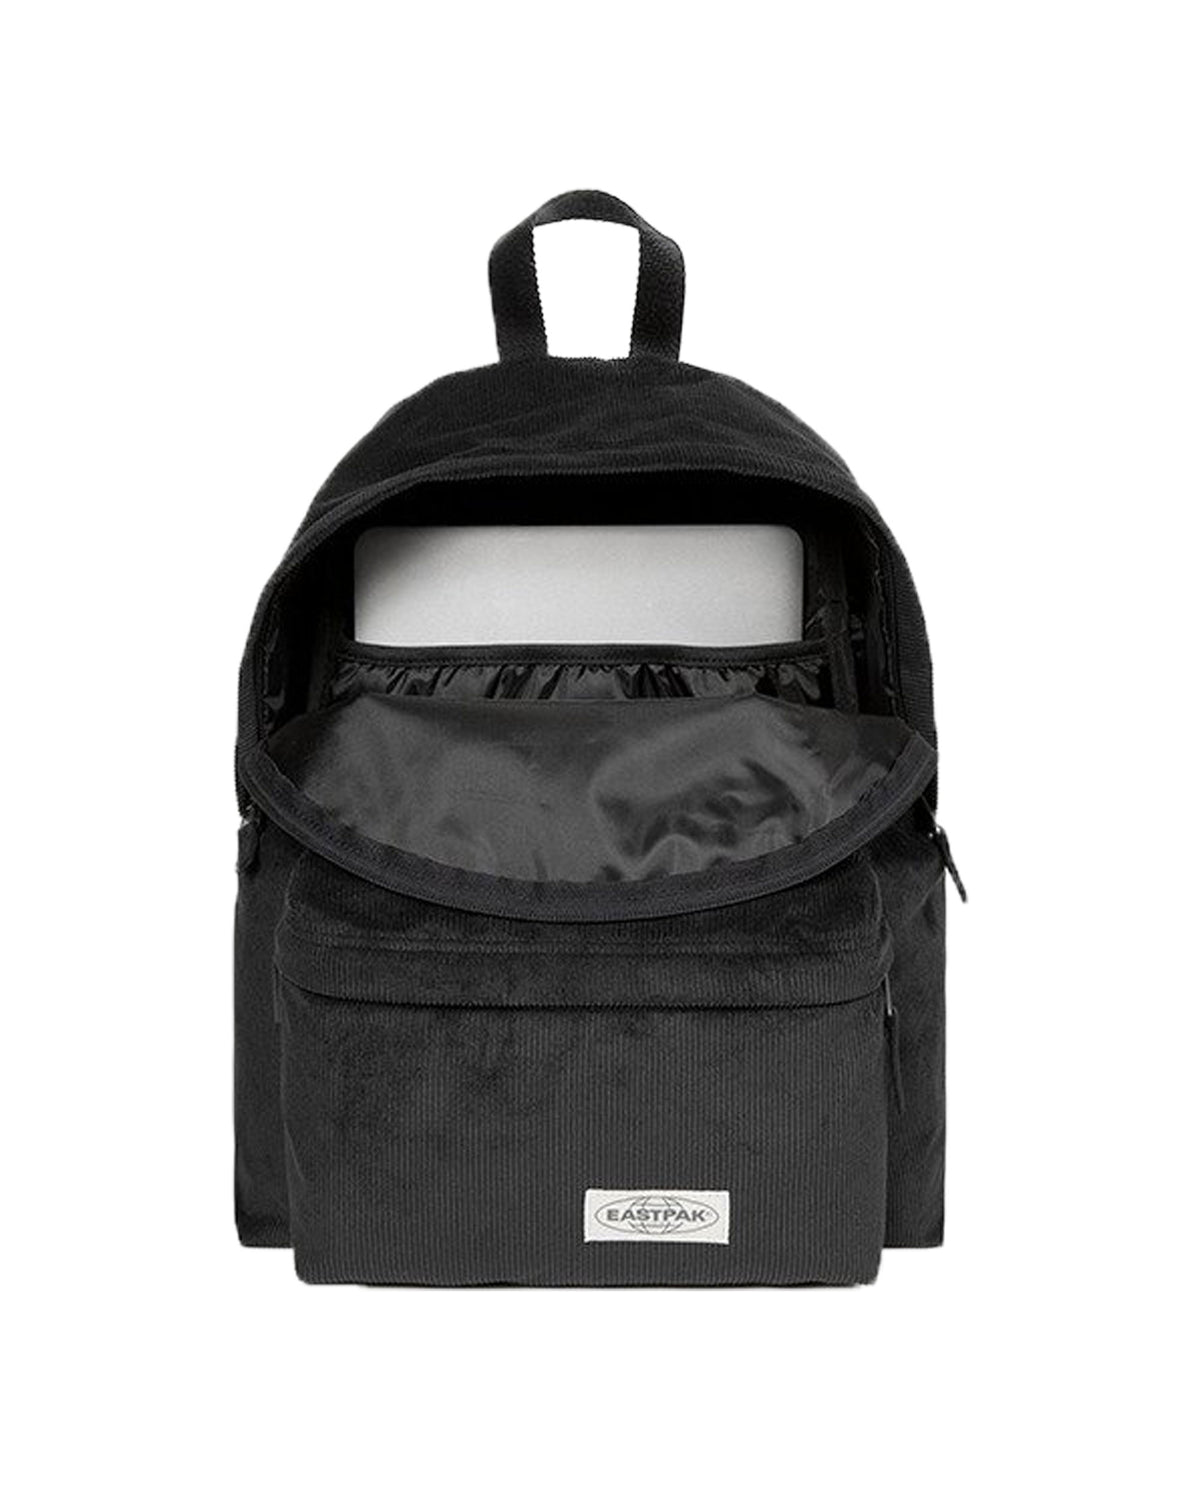 Backpack Eastpak padded pak'r comfy black Velvet